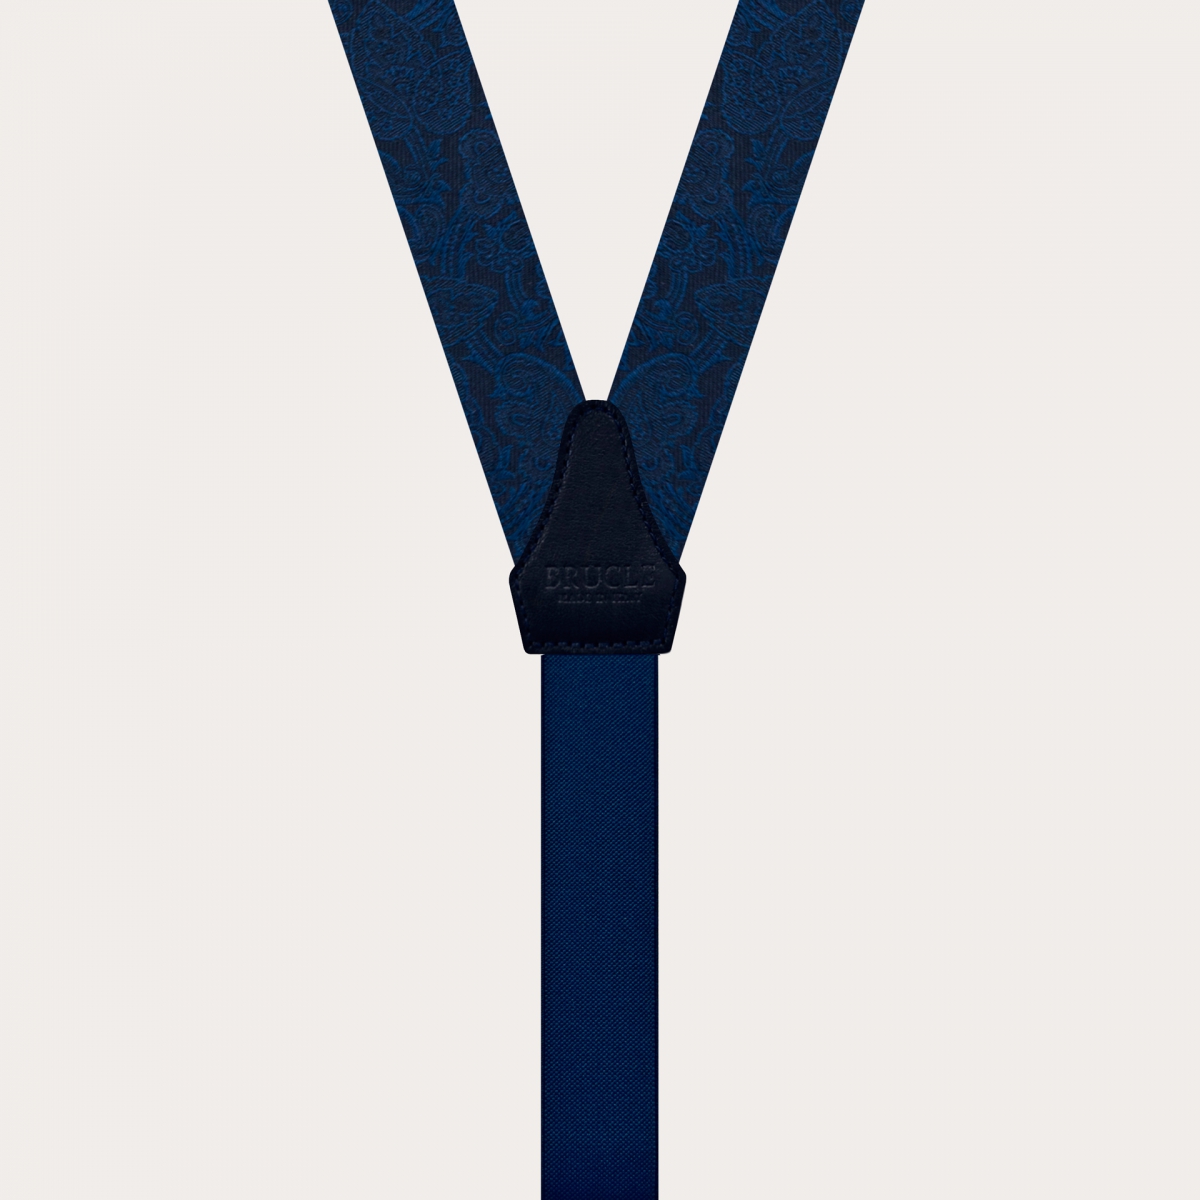 Tirantes en forma de Y en seda jacquard, azul con patrón paisley